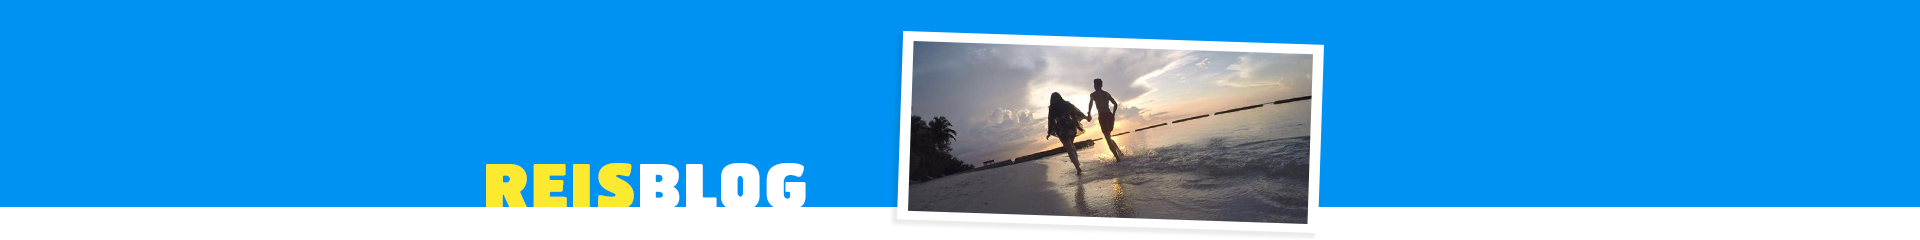 Reisverslag Malediven – Dream Holiday Tester